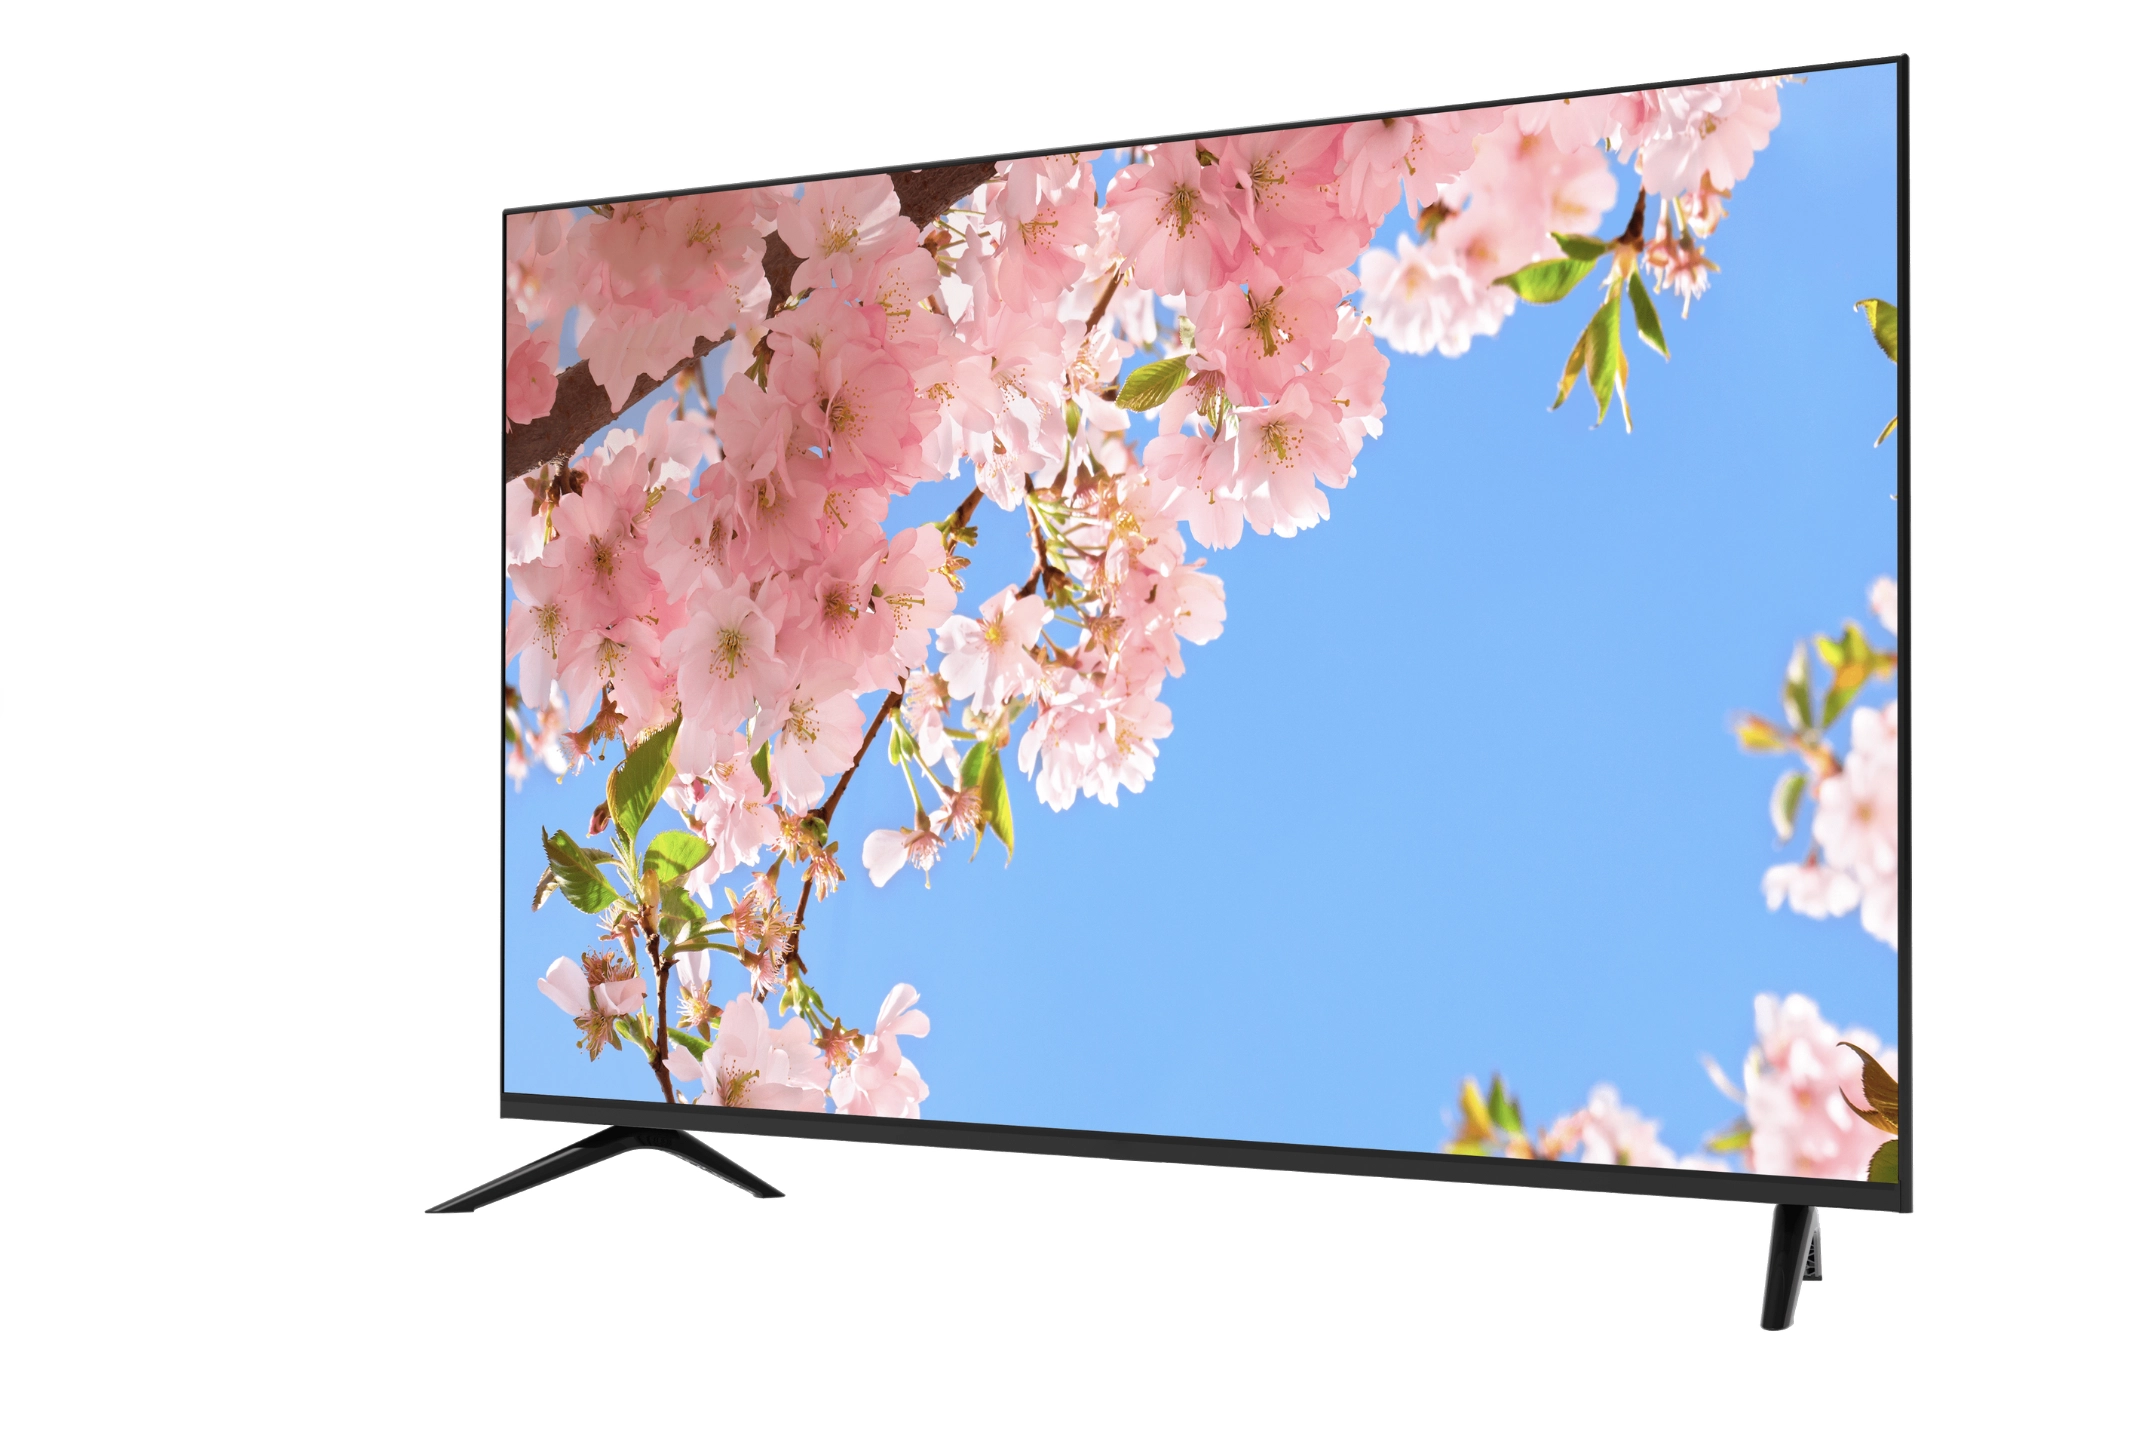 Телевизор Moonx 55AG900 4K UHD Smart TV. ХИТ ПРОДАЖ! недорого